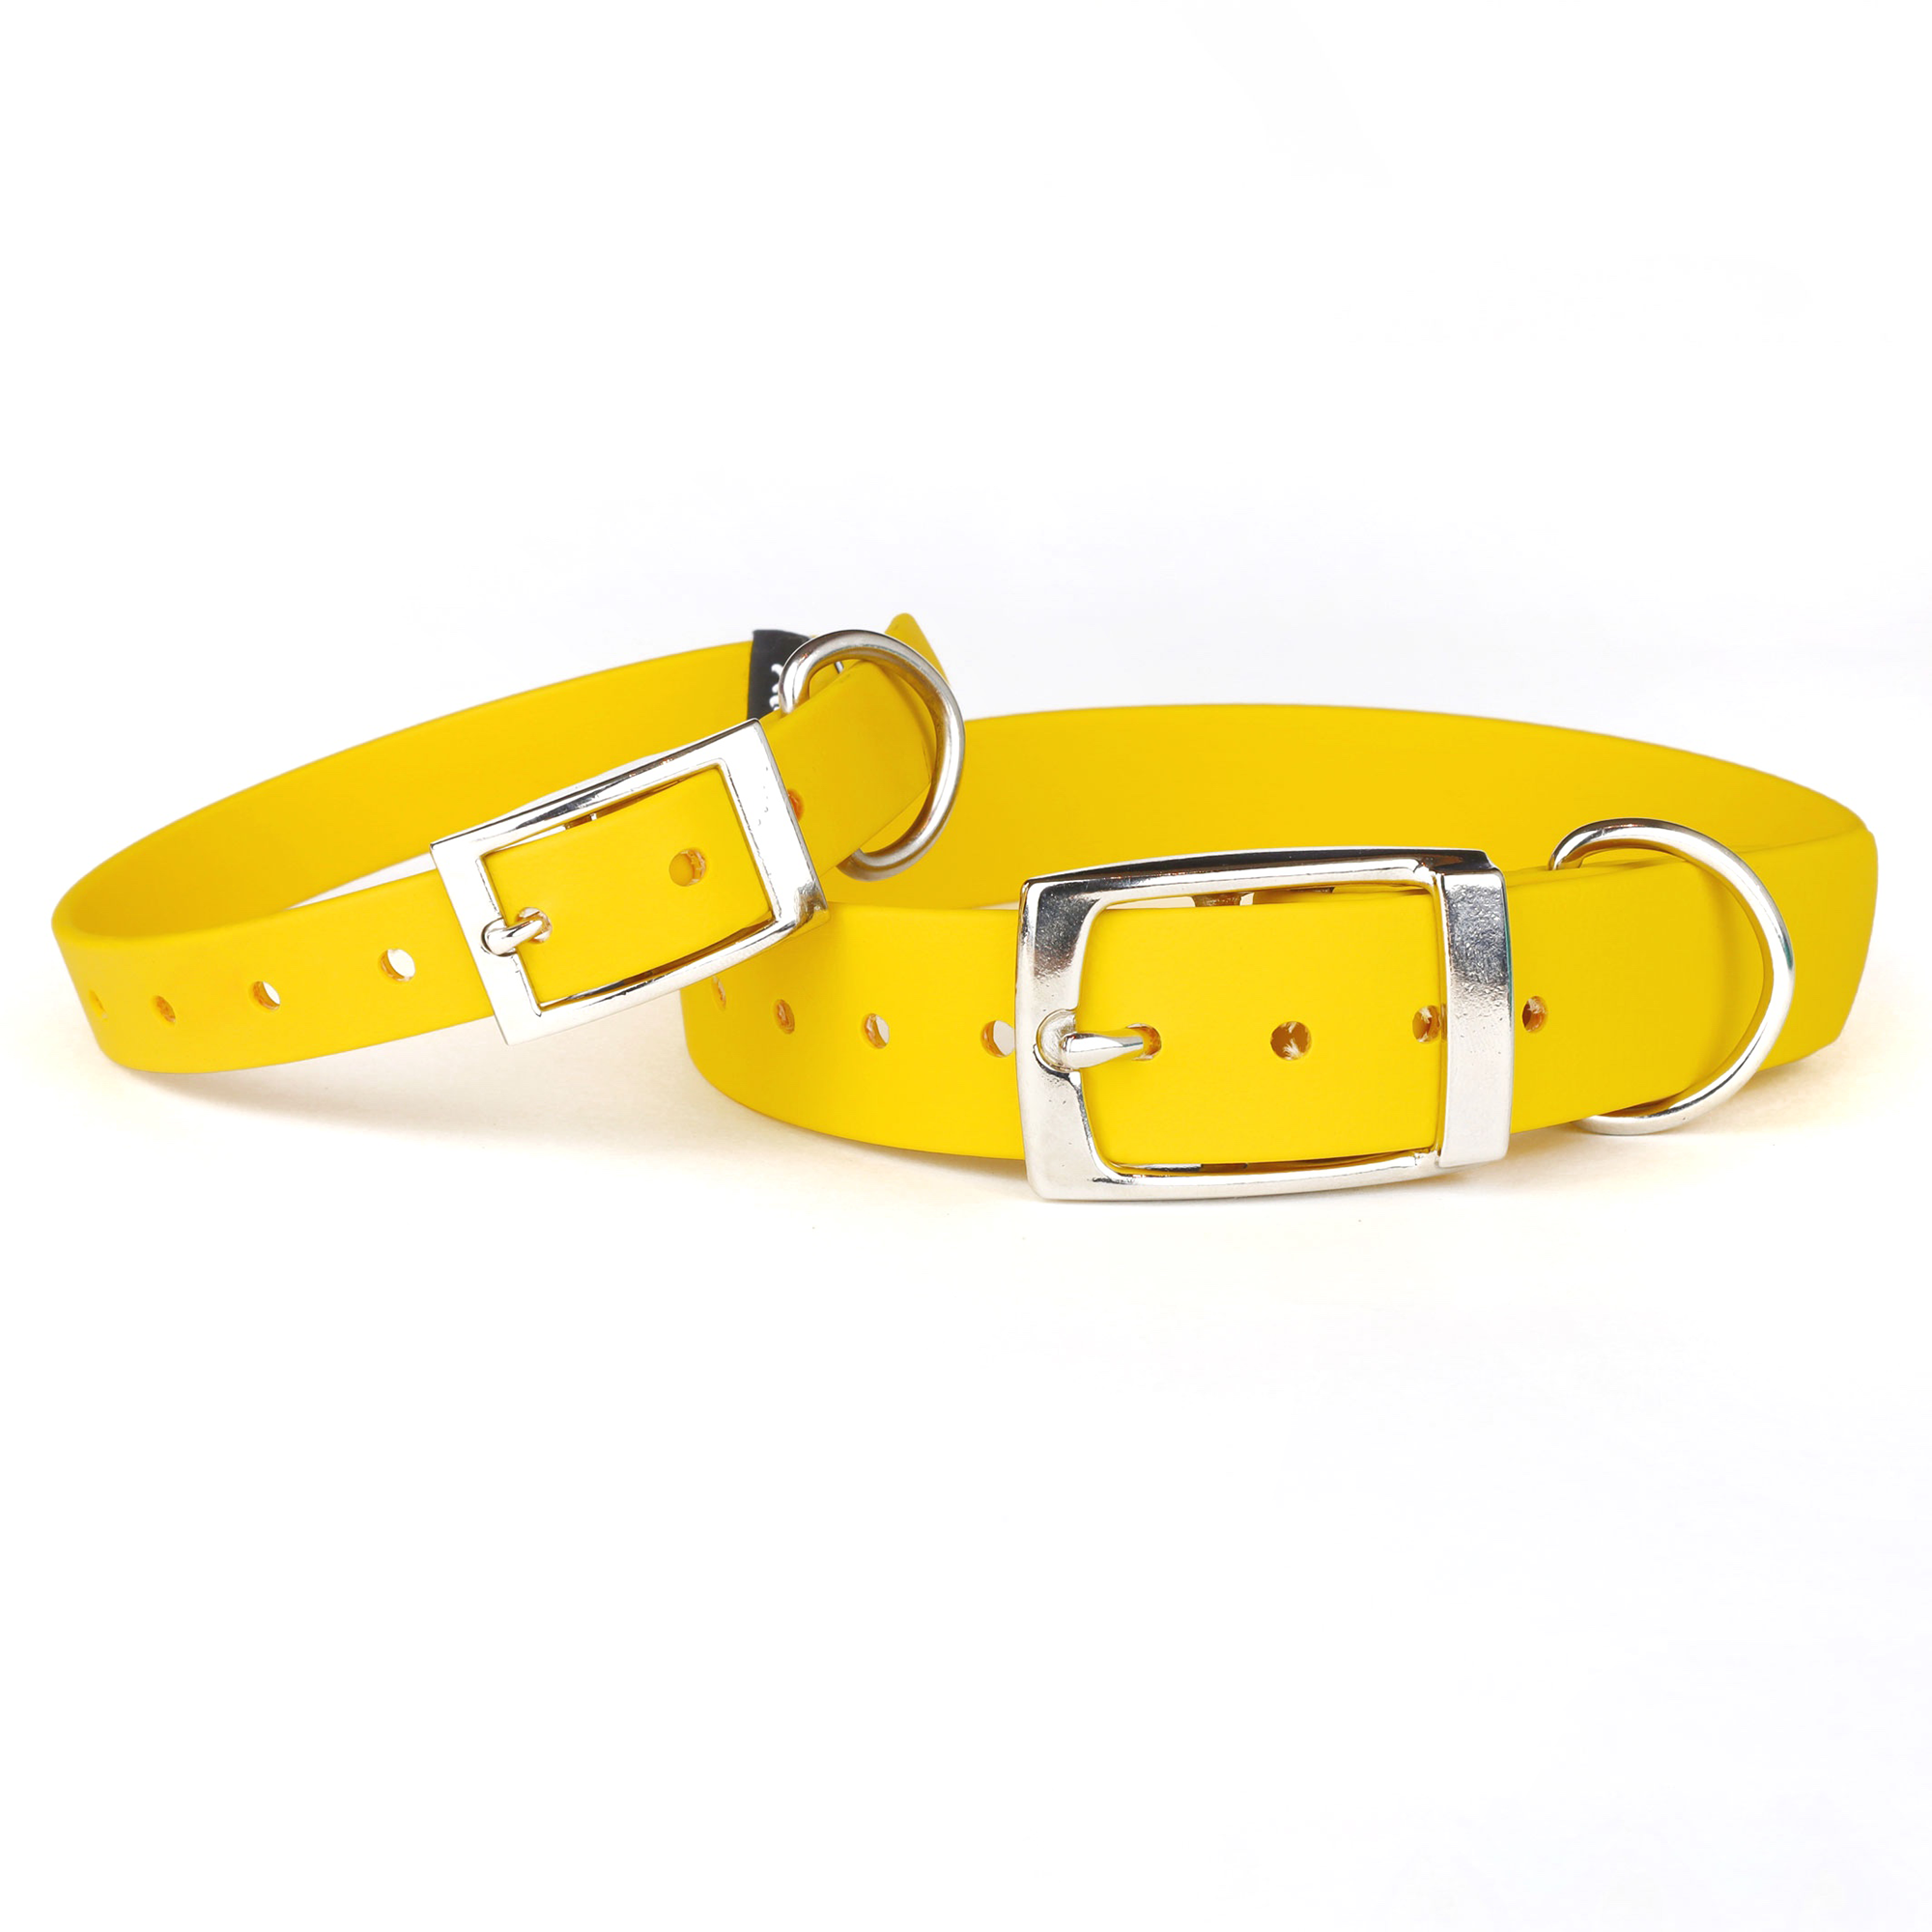 Waterproof Dog Collar in Yellow